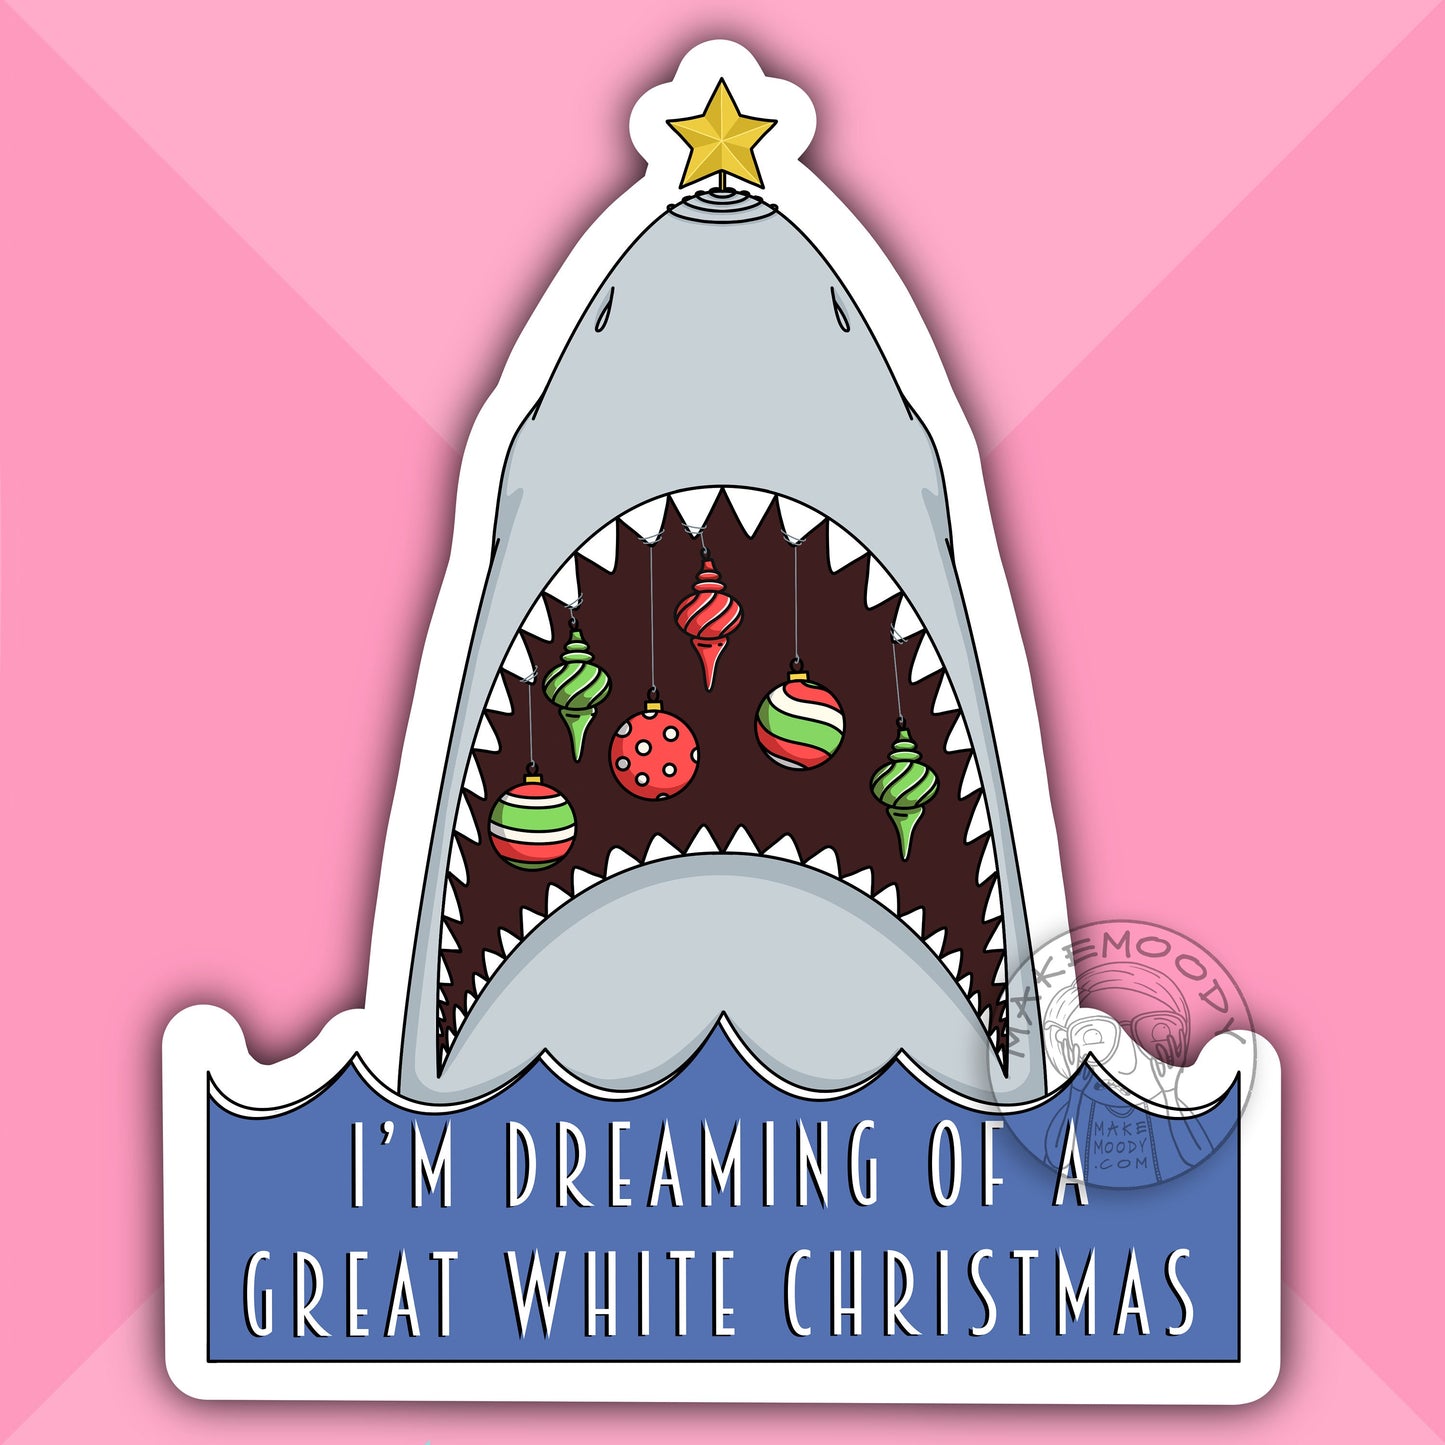 Great White Shark Christmas MUG - Coffee Mug - White Christmas Mug, Shark Mug, Great White Christmas Mug, Shark Week Mug, Great White Shark